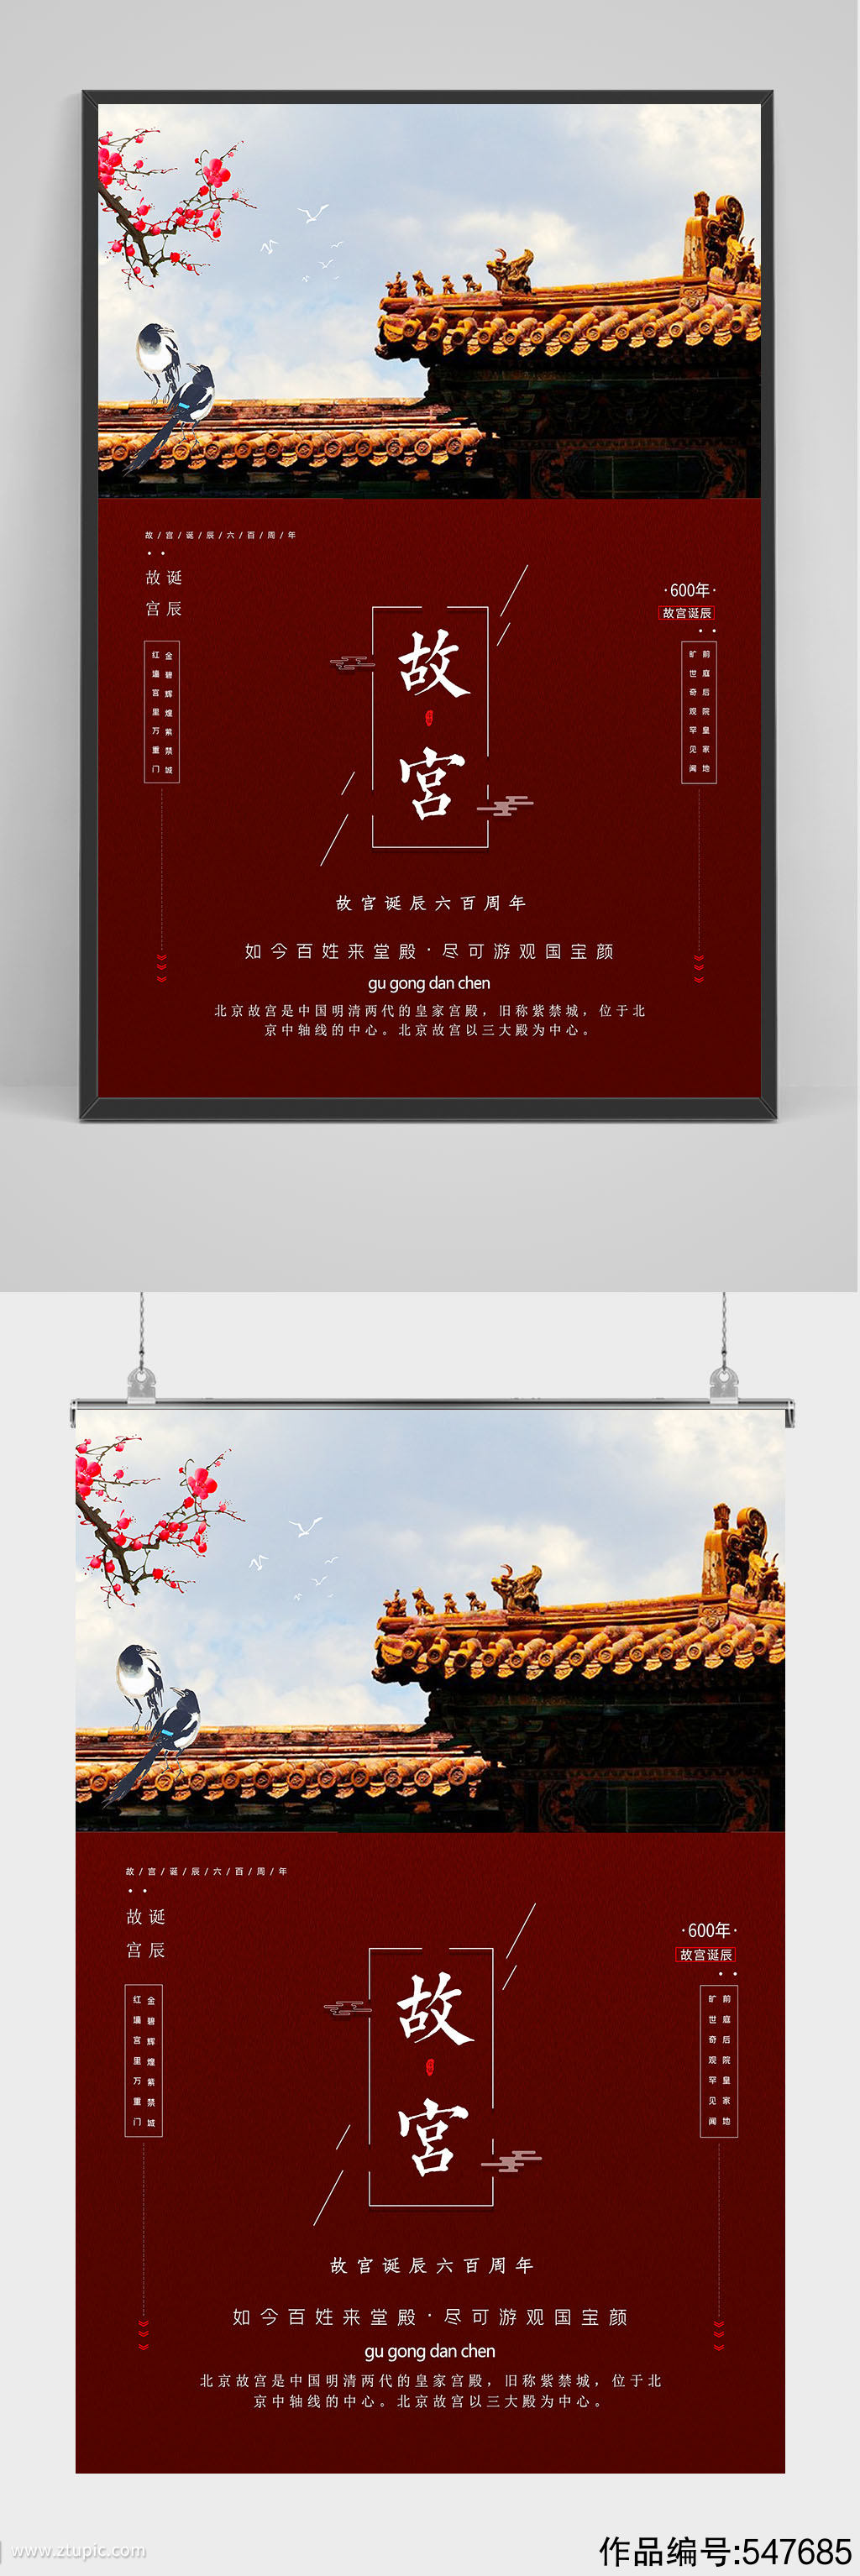 精品红色故宫旅游海报设计素材